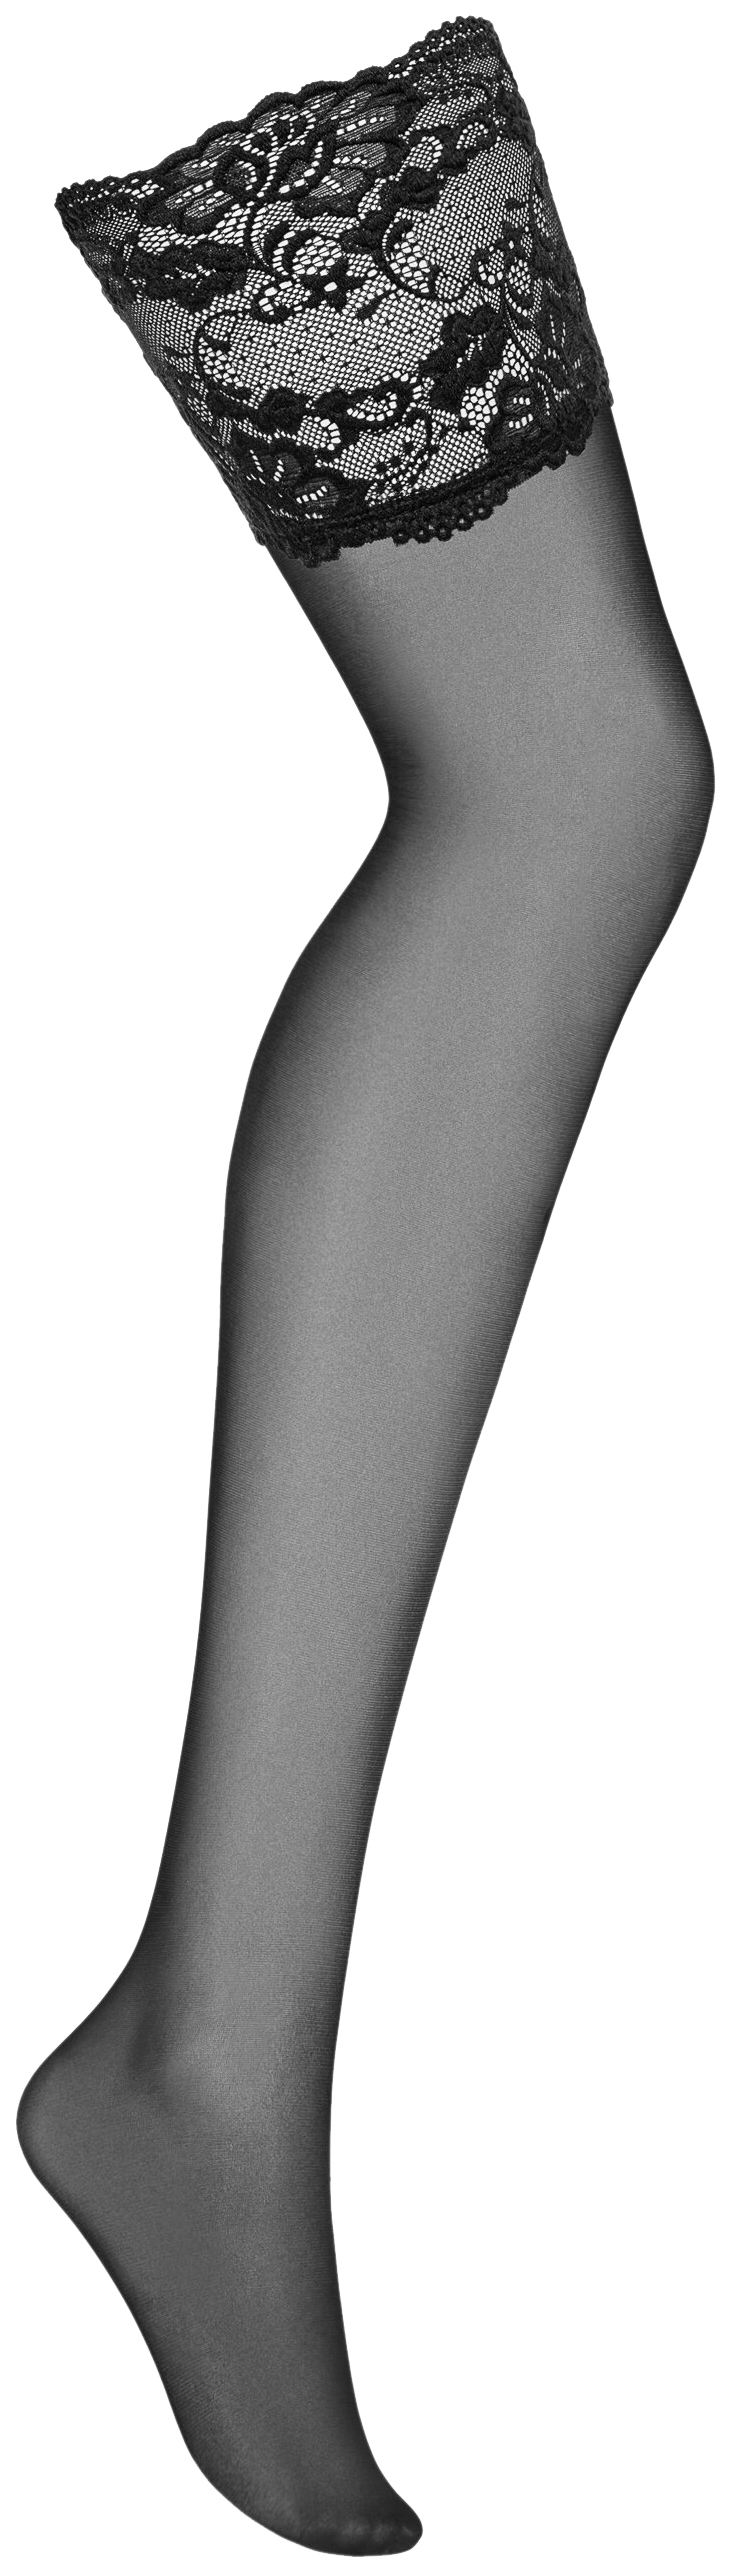 фото Obsessive чулки с широкой кружевной резинкой 810 stockings черные s/m